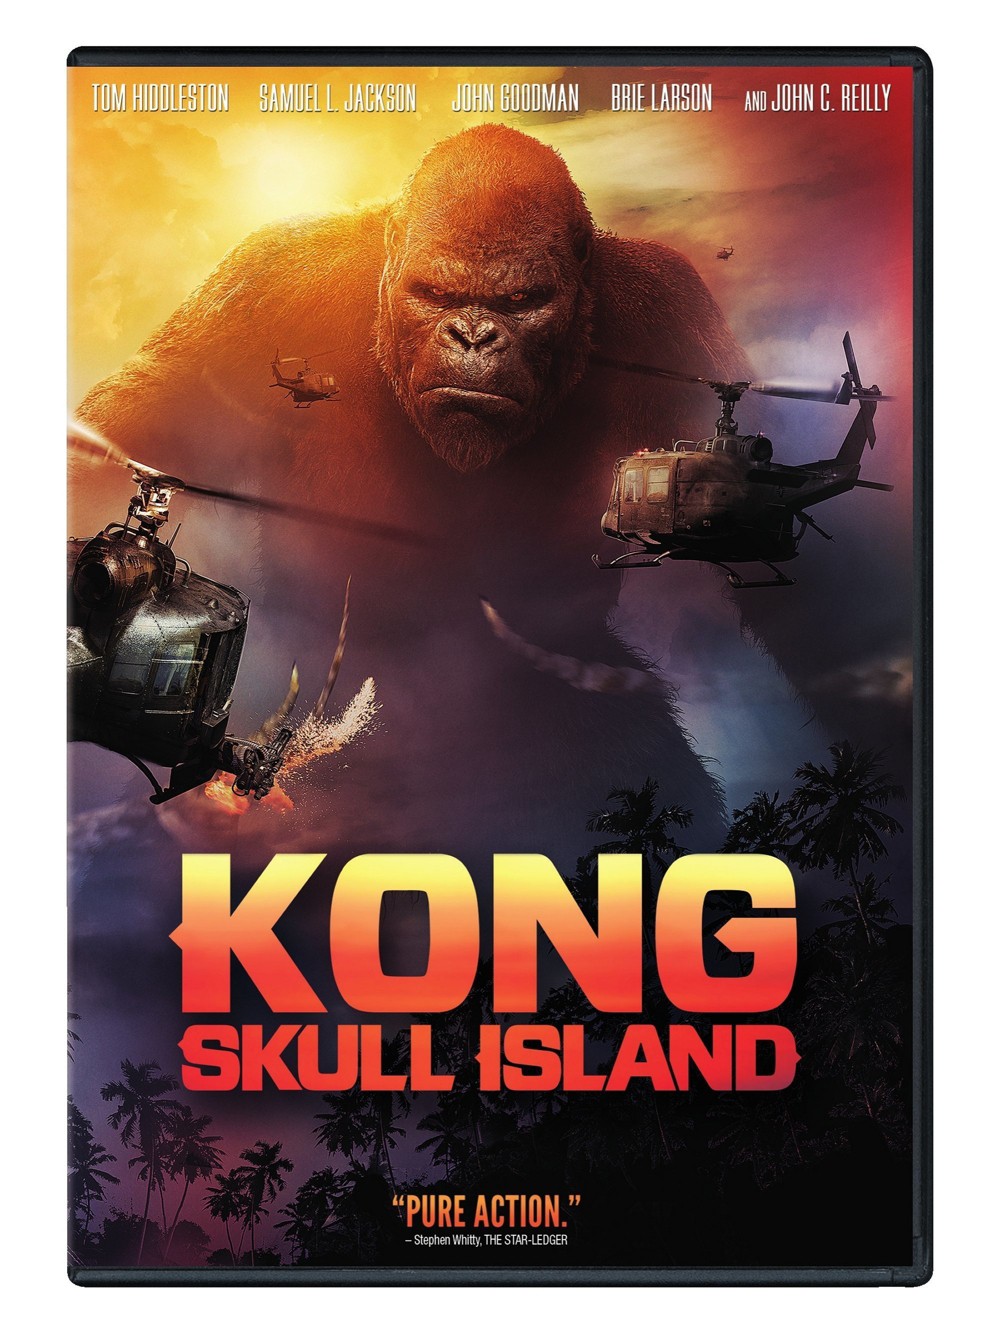 Kong: skull island - Filmes - Comprar/Alugar - Rakuten TV